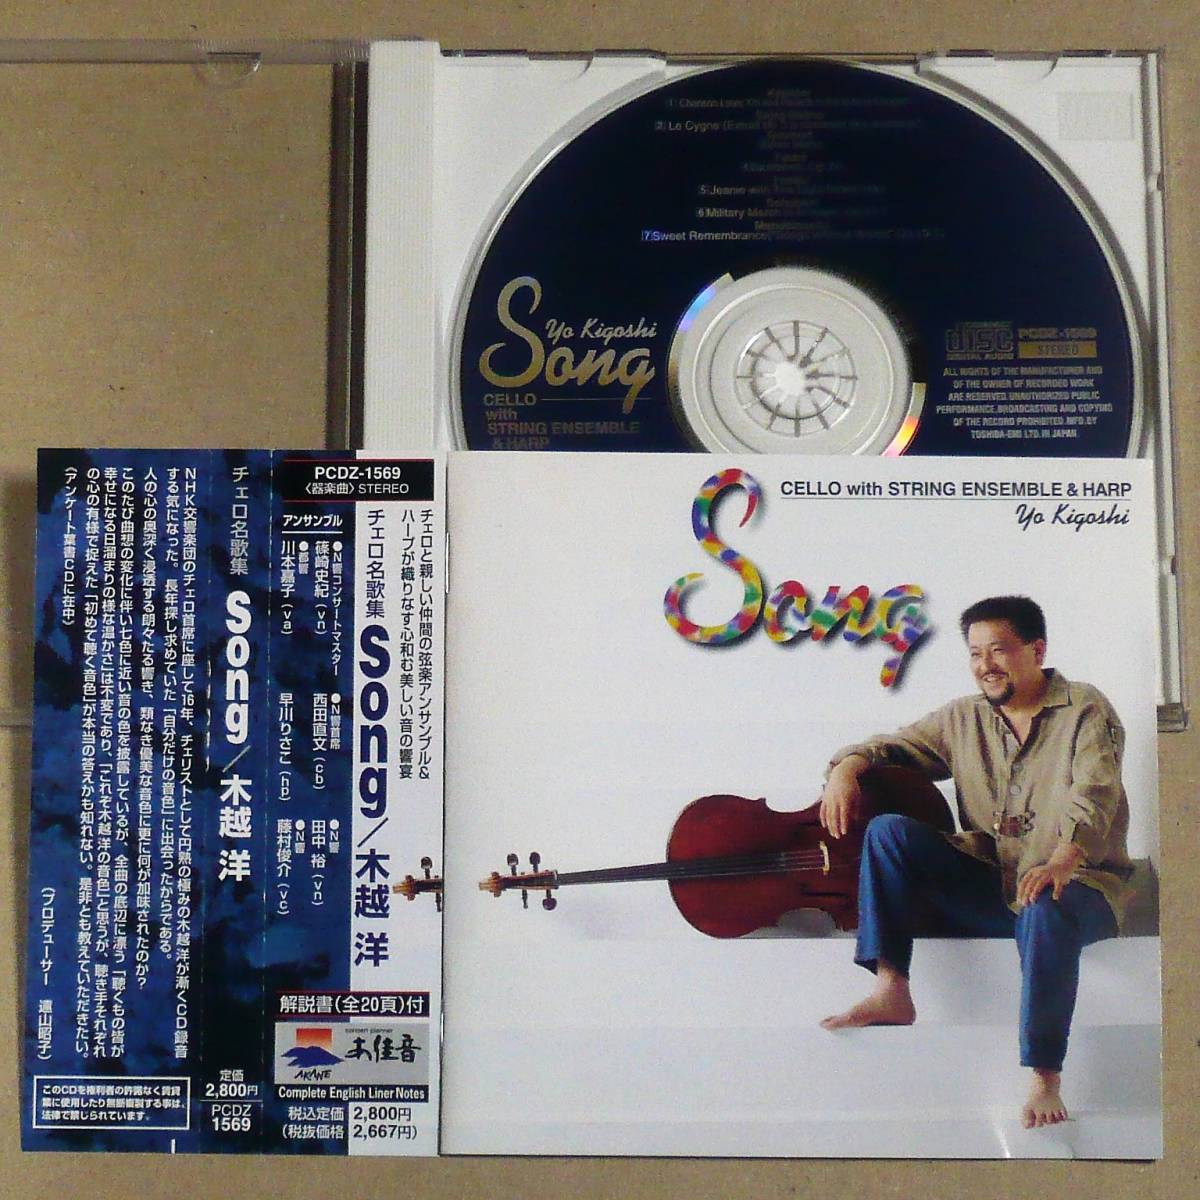 CD* дерево ..|Song NHK реверберация приятный . виолончель шея сиденье по причине сердце мир . струна приятный ансамбль 